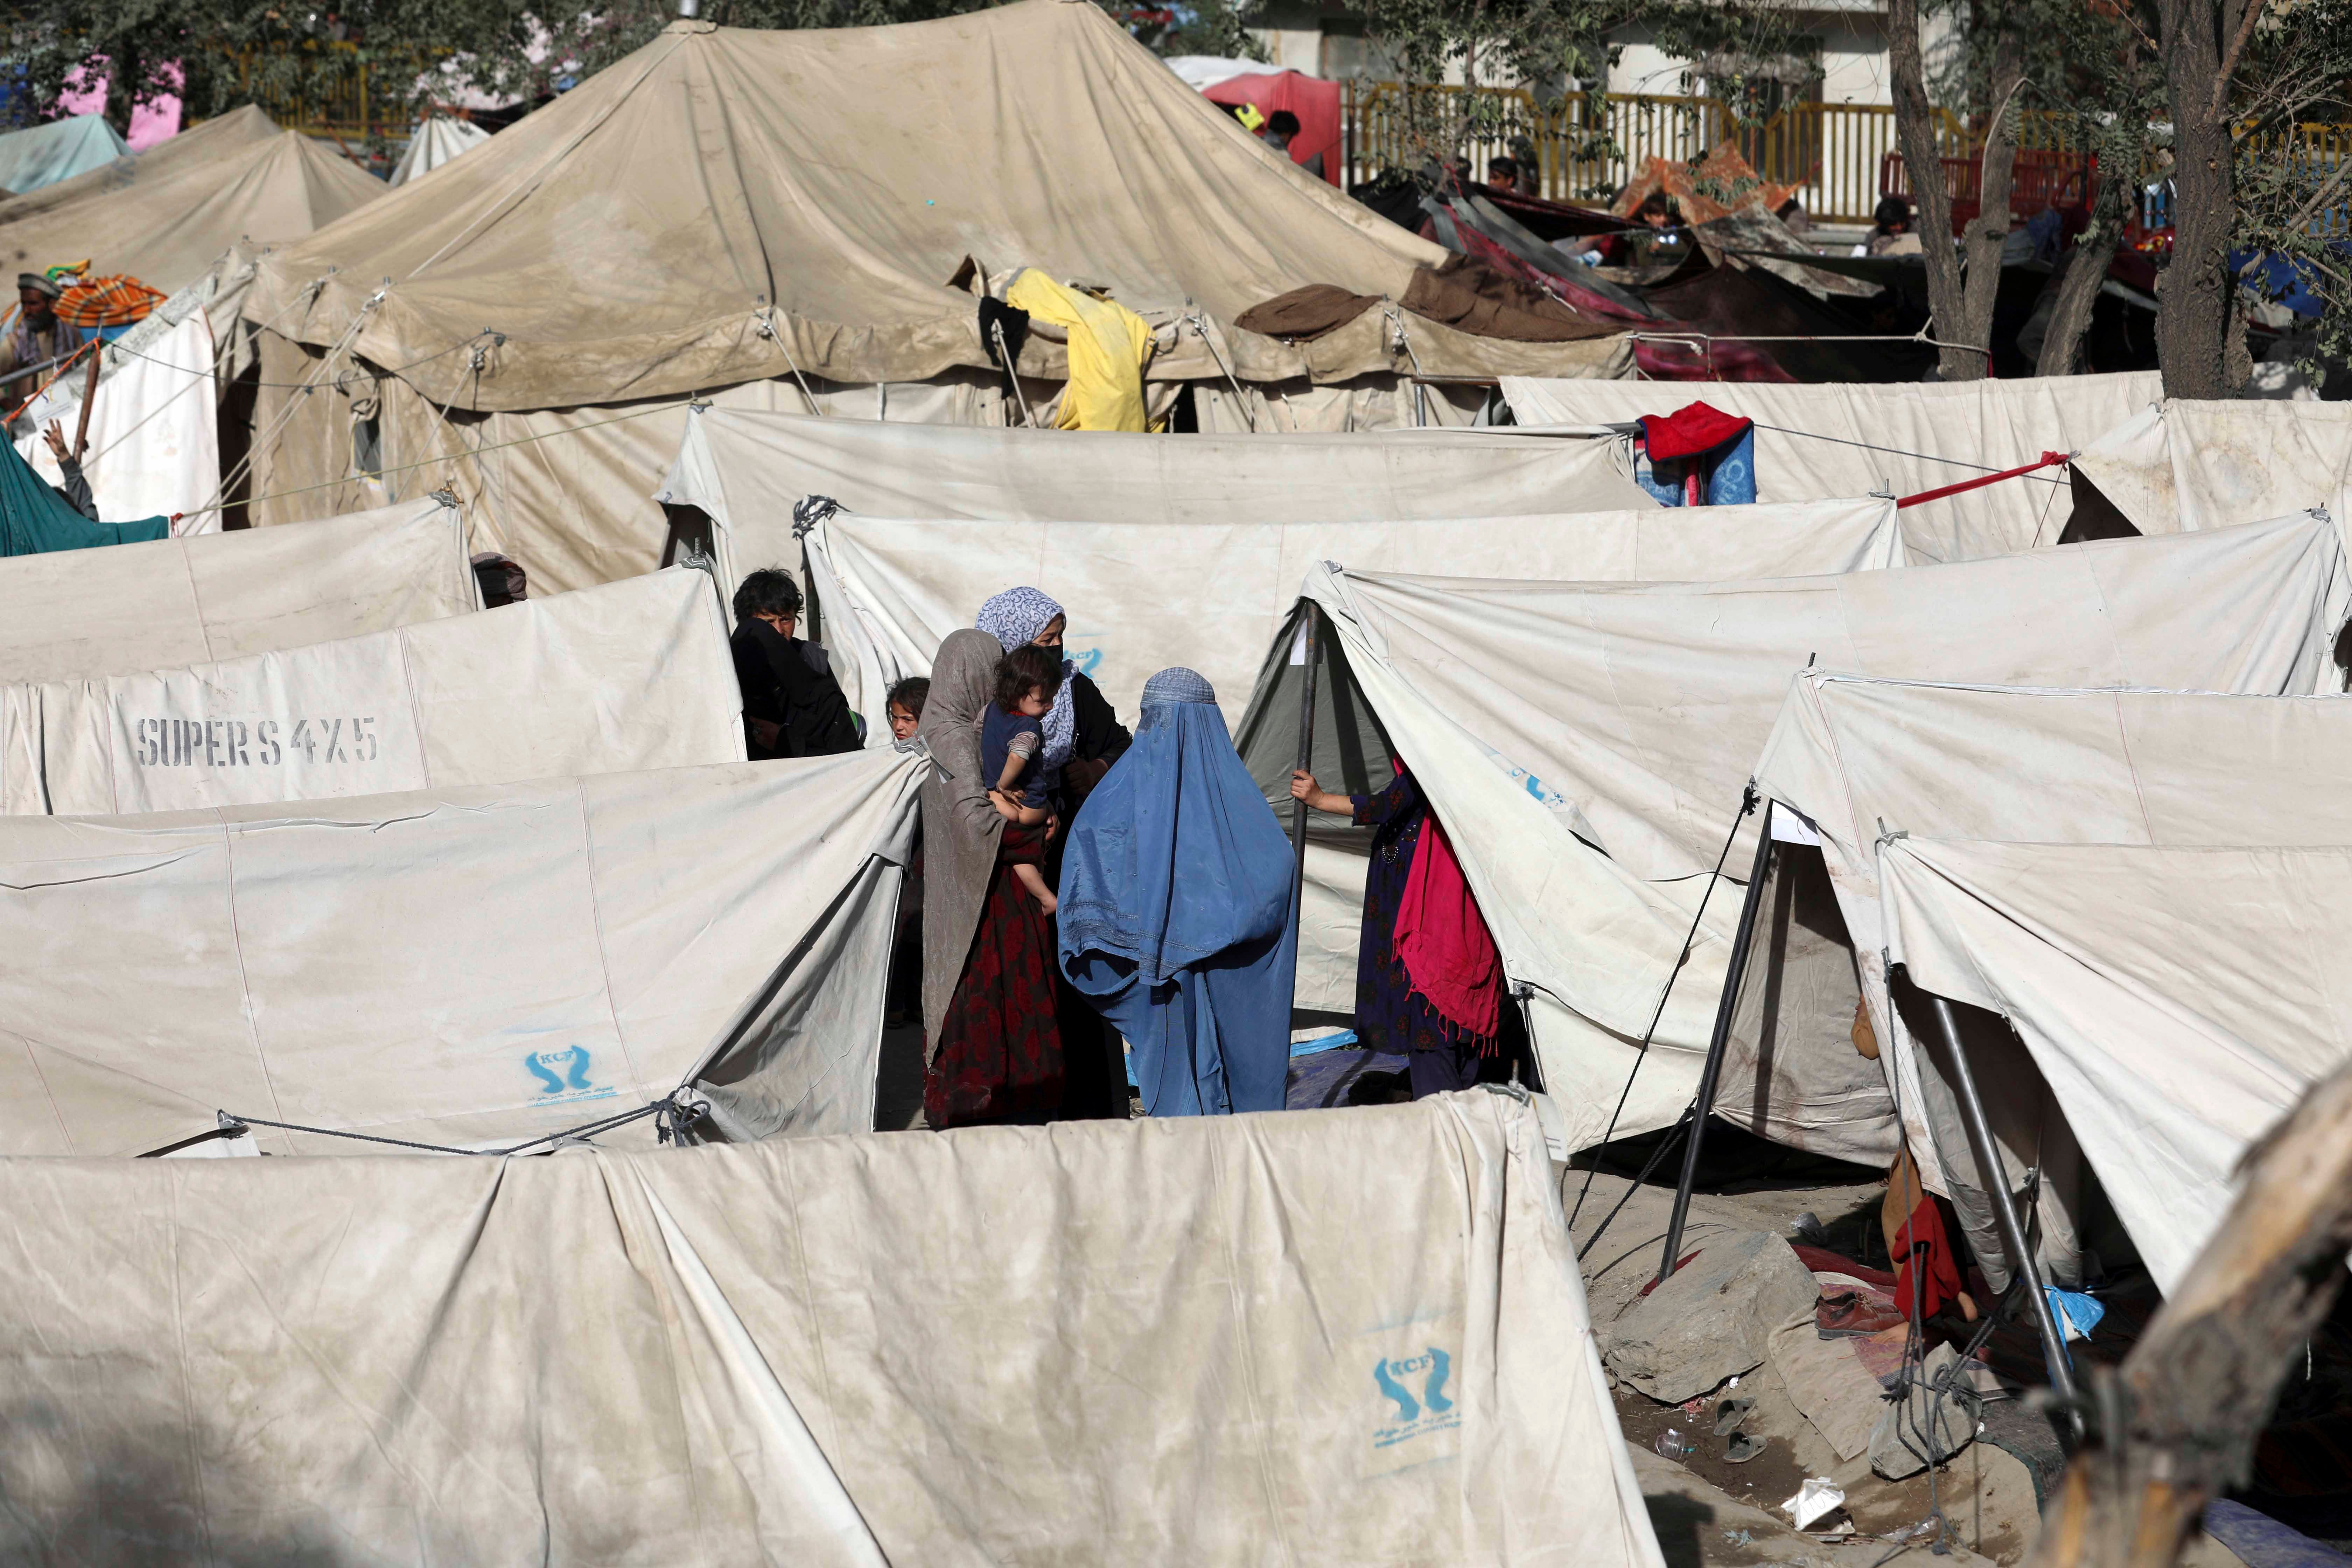 Des femmes afghanes ayant fui leur province dans le nord du pays, photographiées parmi des tentes mises en place dans un parc public à Kaboul, Afghanistan, le vendredi 13 août 2021. Deux jours plus tard, le dimanche 15 août, les talibans ont saisi le contrôle de la capitale. 